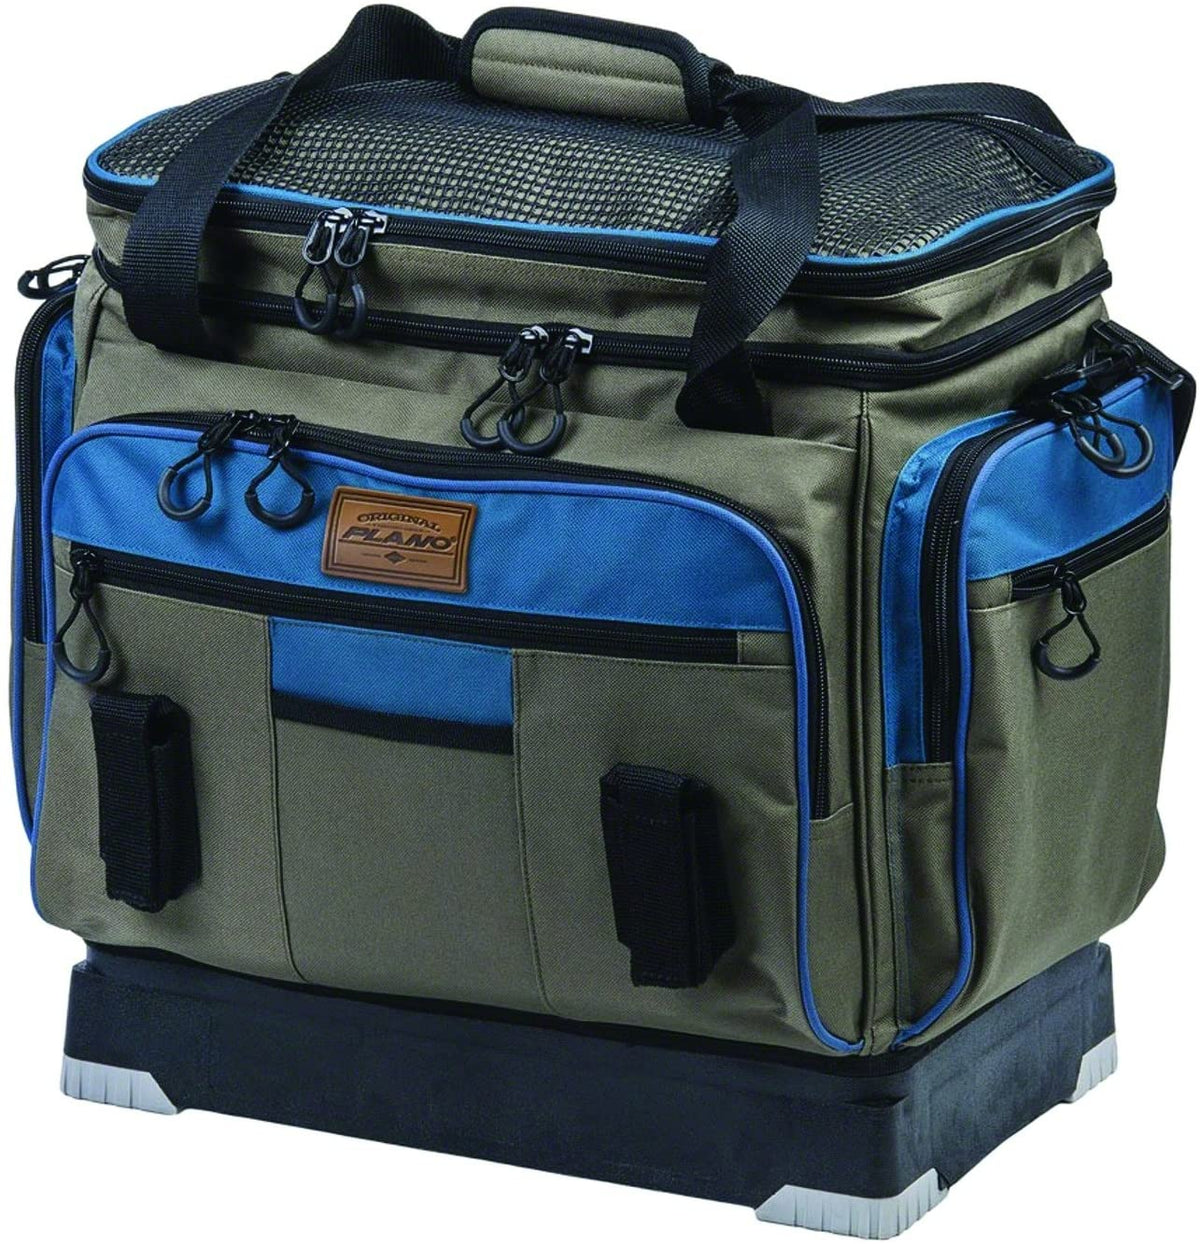 Plano M-Series Hydro-Flo Tackle Bag 3700 Series - LOTWSHQ